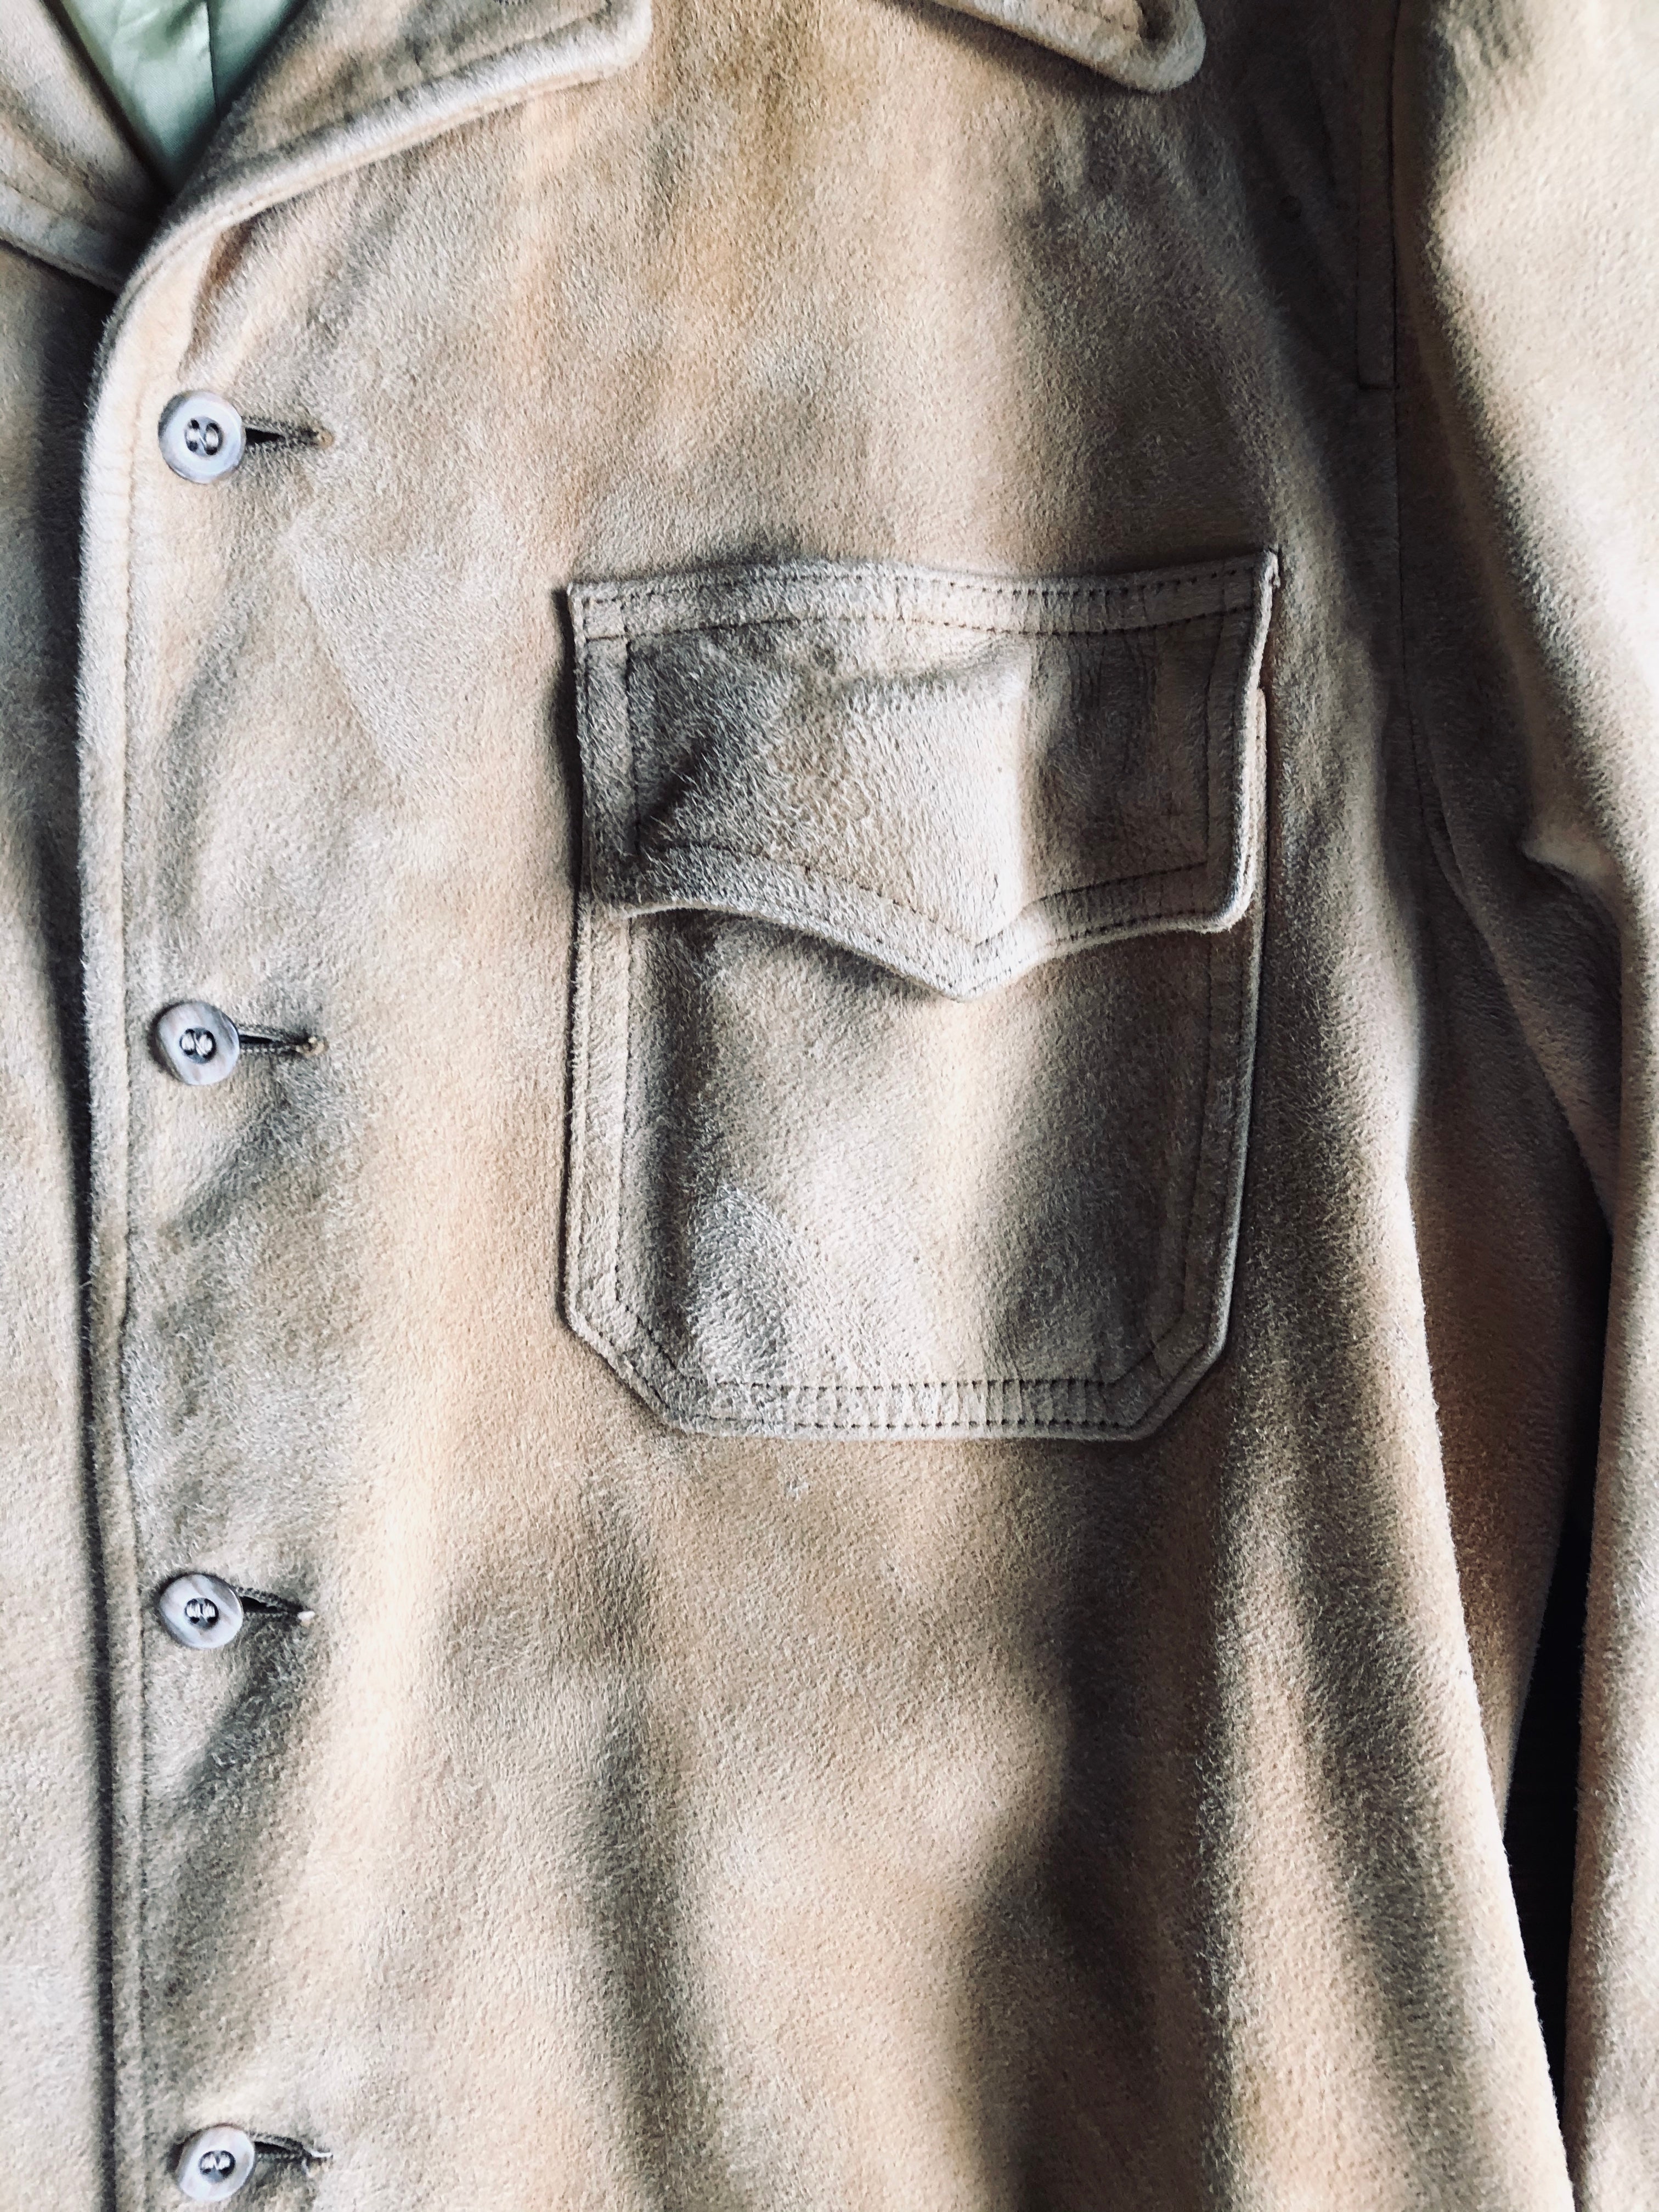 1970’s Bert Paley Ltd. Suede Shirt